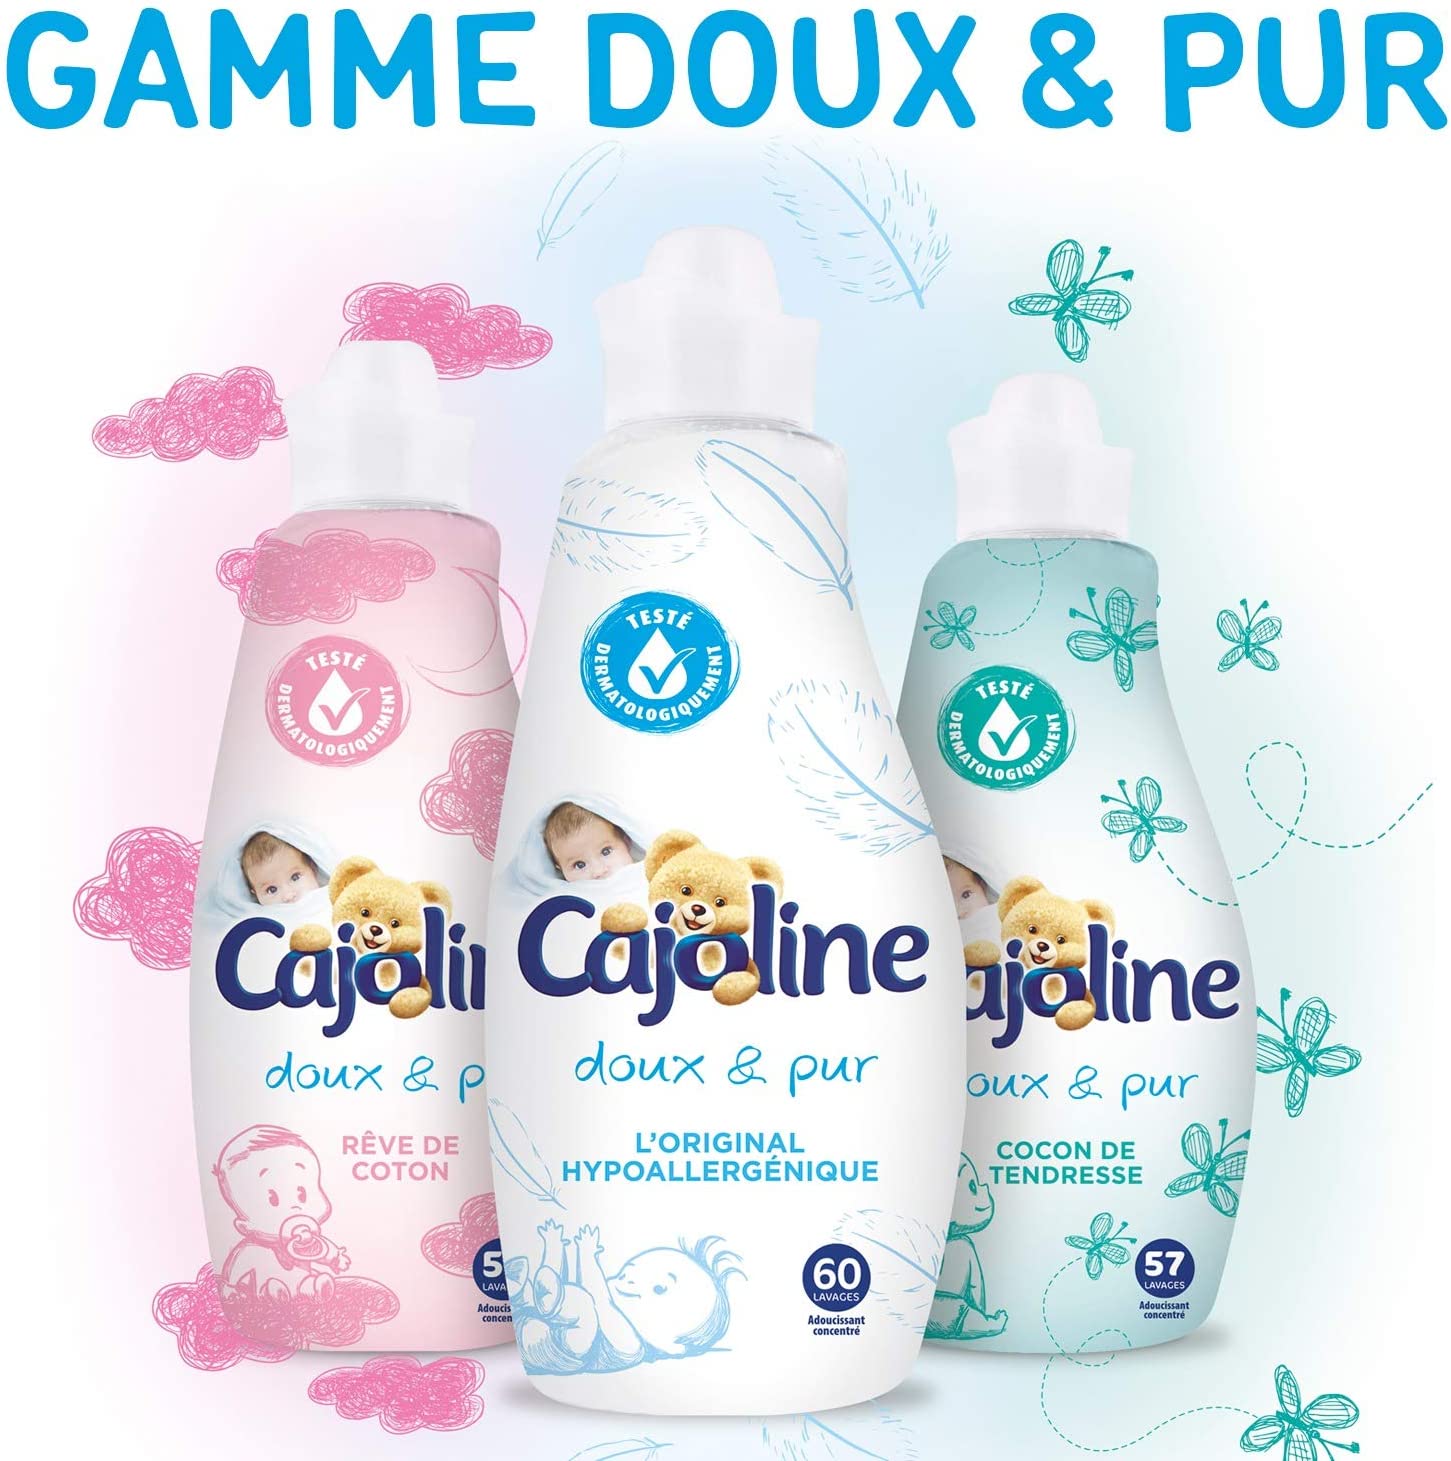 deal - Cajoline Adoucissant Concentré, Doux & Pur, Peaux sensibles